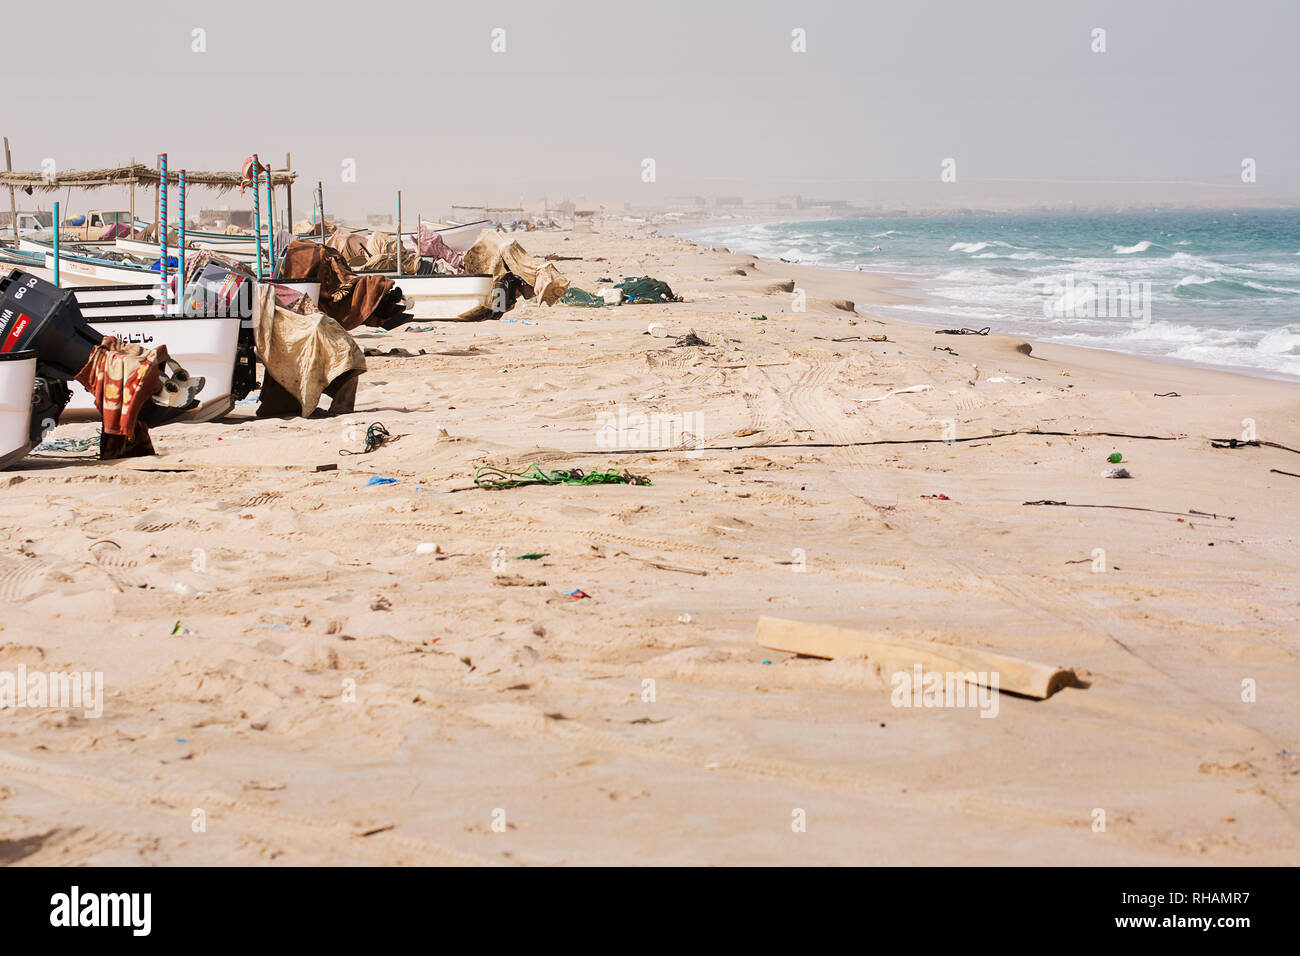 Haladd Ras, Oman - Novembre 5, 2018 : l'état de la mer et des bateaux de pêche sur la plage sans que personne Banque D'Images